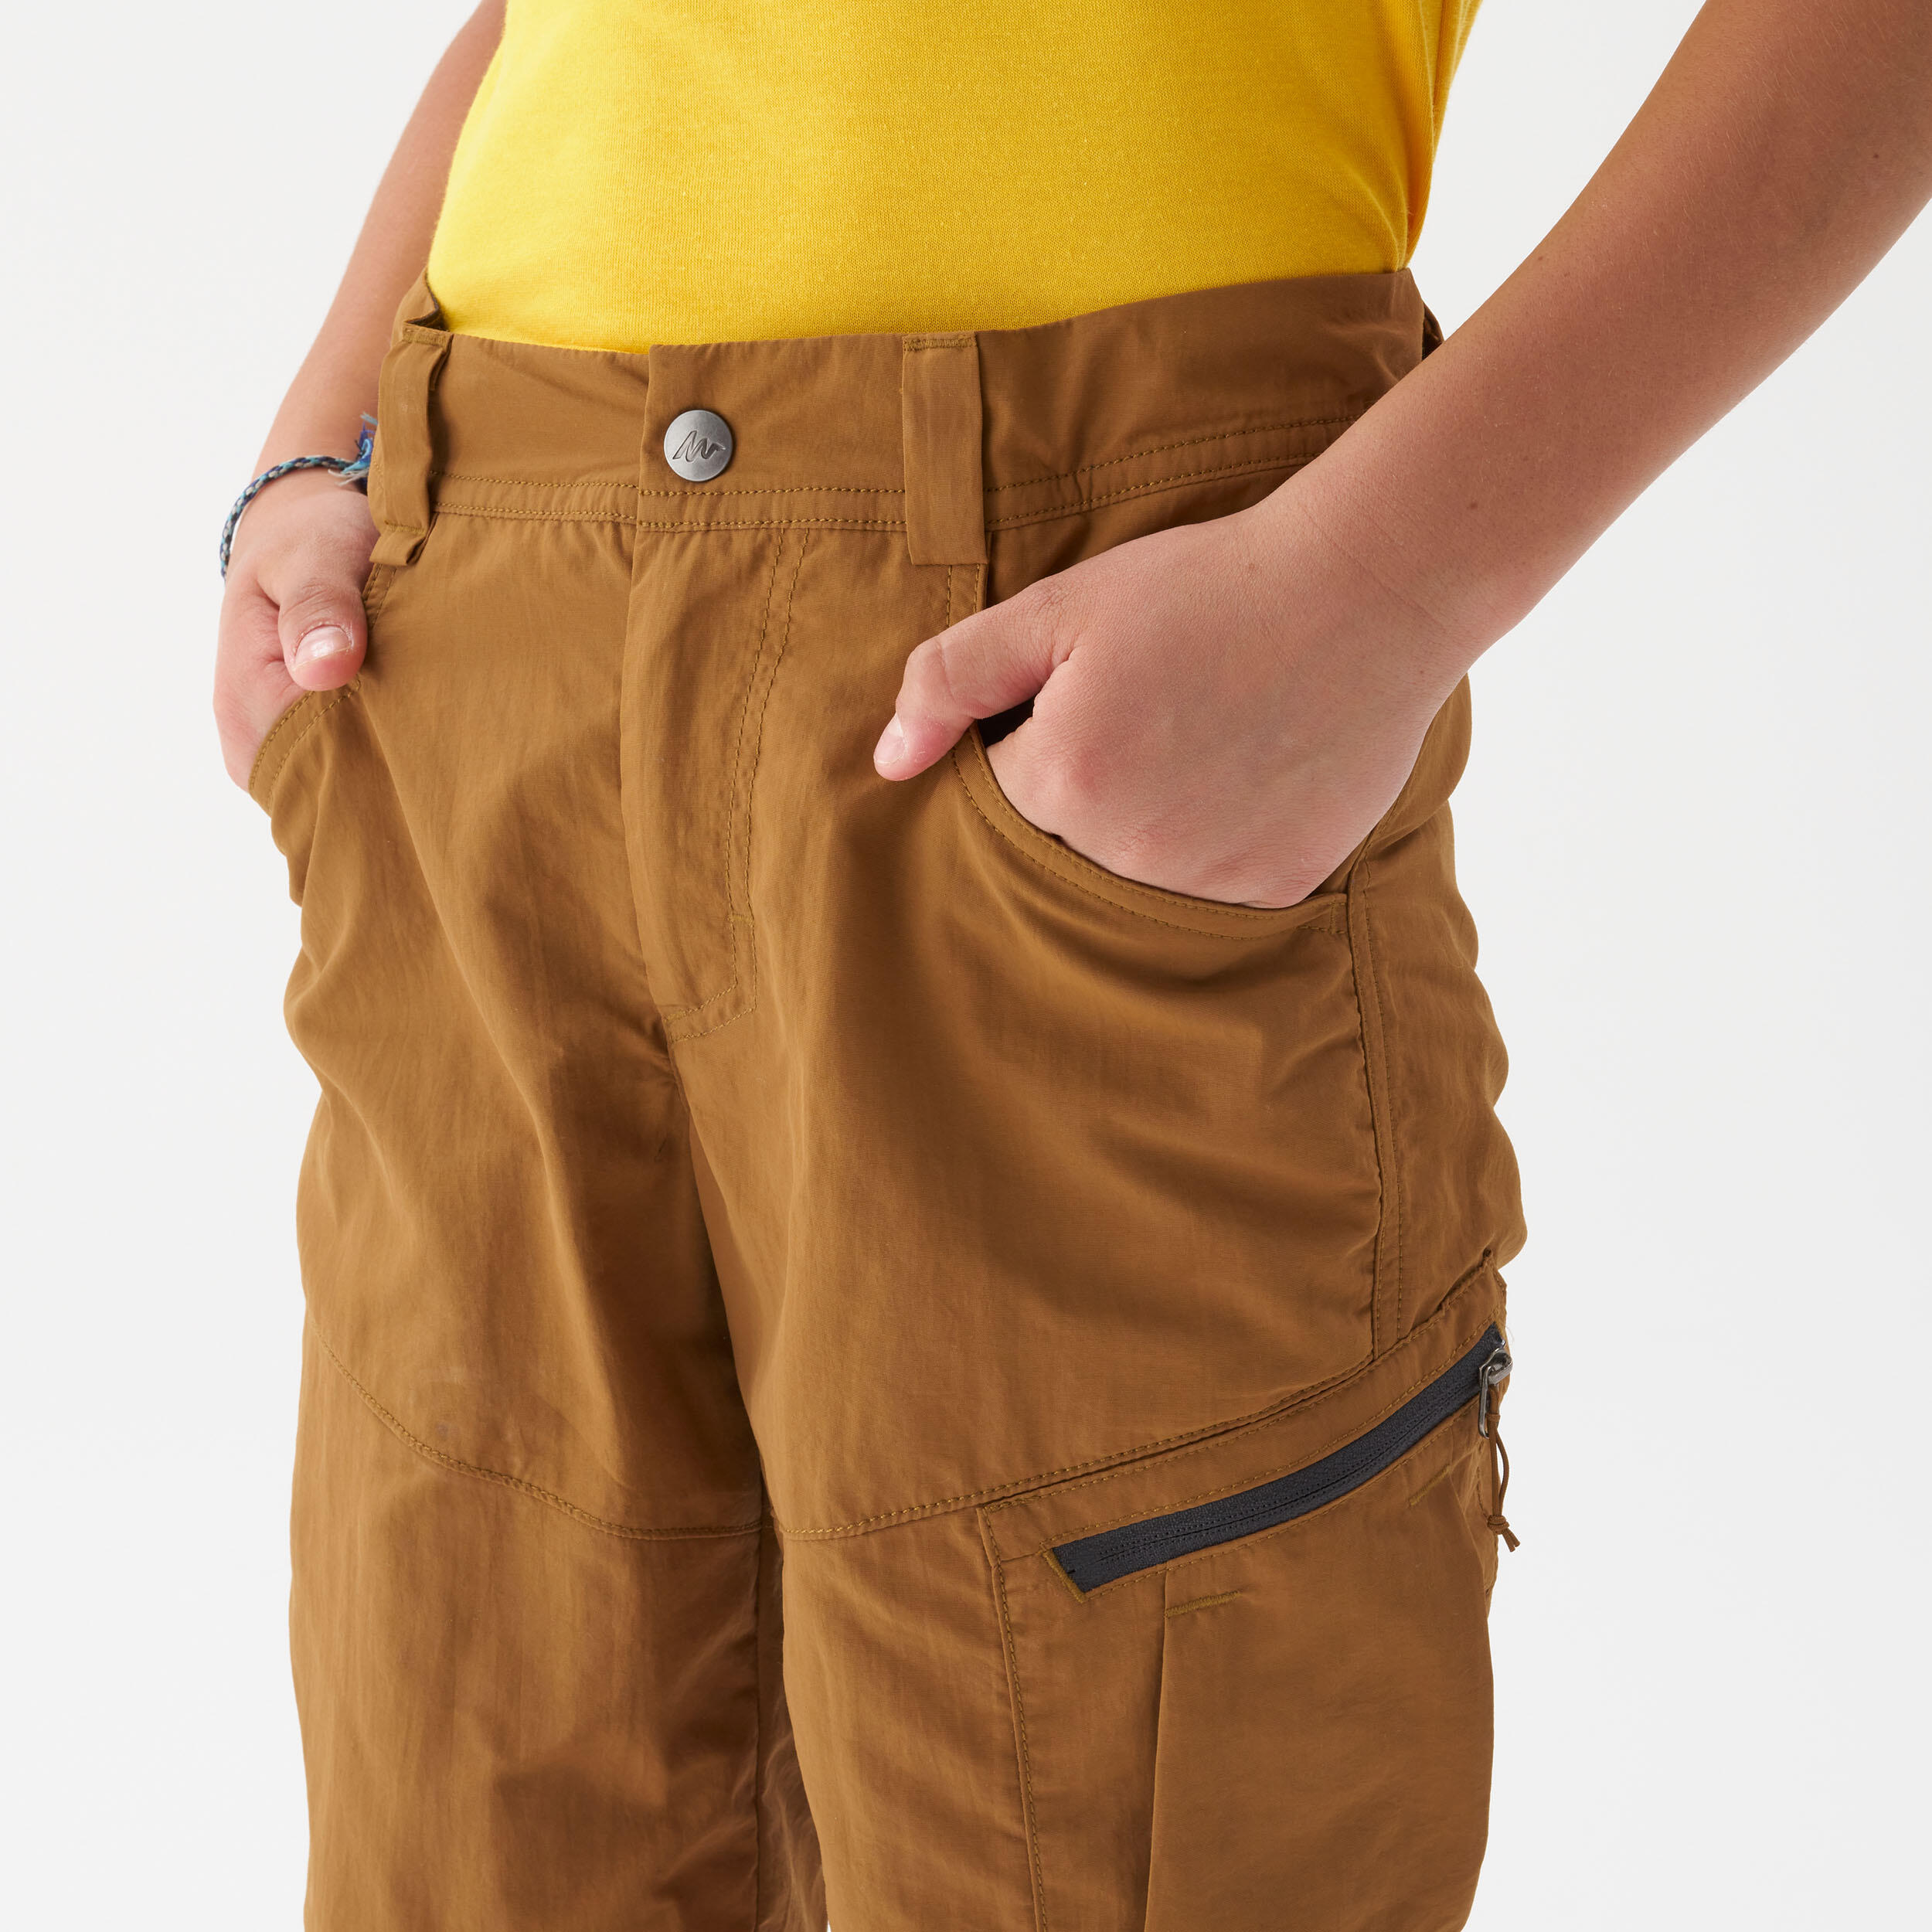 Child's hiking shorts - MH500 dark brown - 7-15 years 4/6